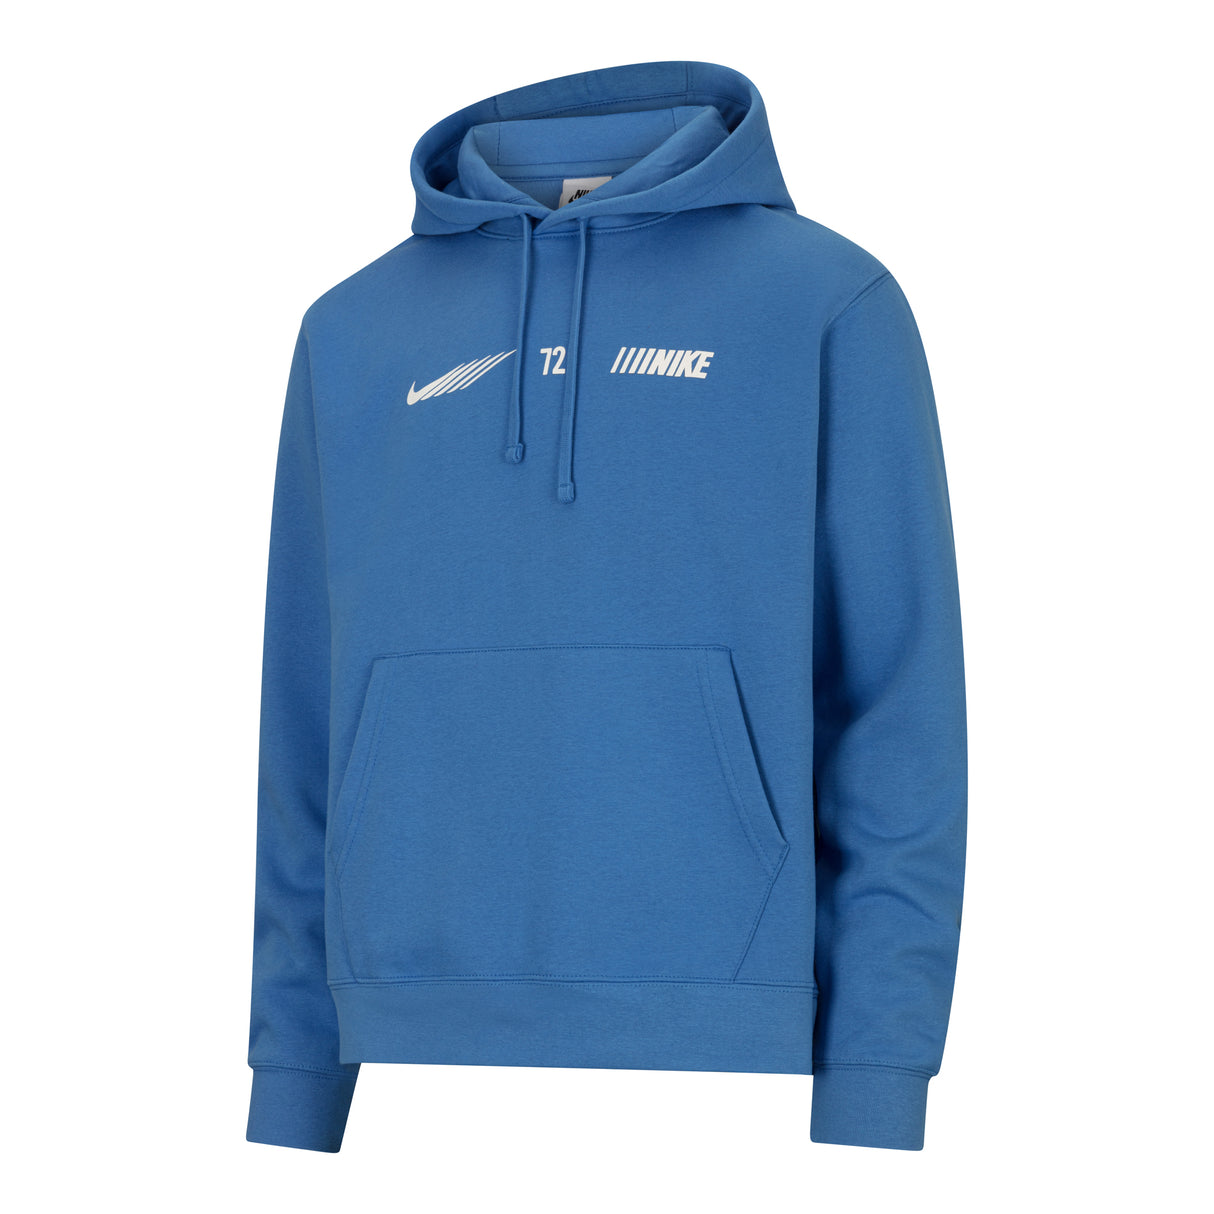 Nike Sportswear Standard Issue Men's Fleece Cargo Tracksuit in Light Photo Blue